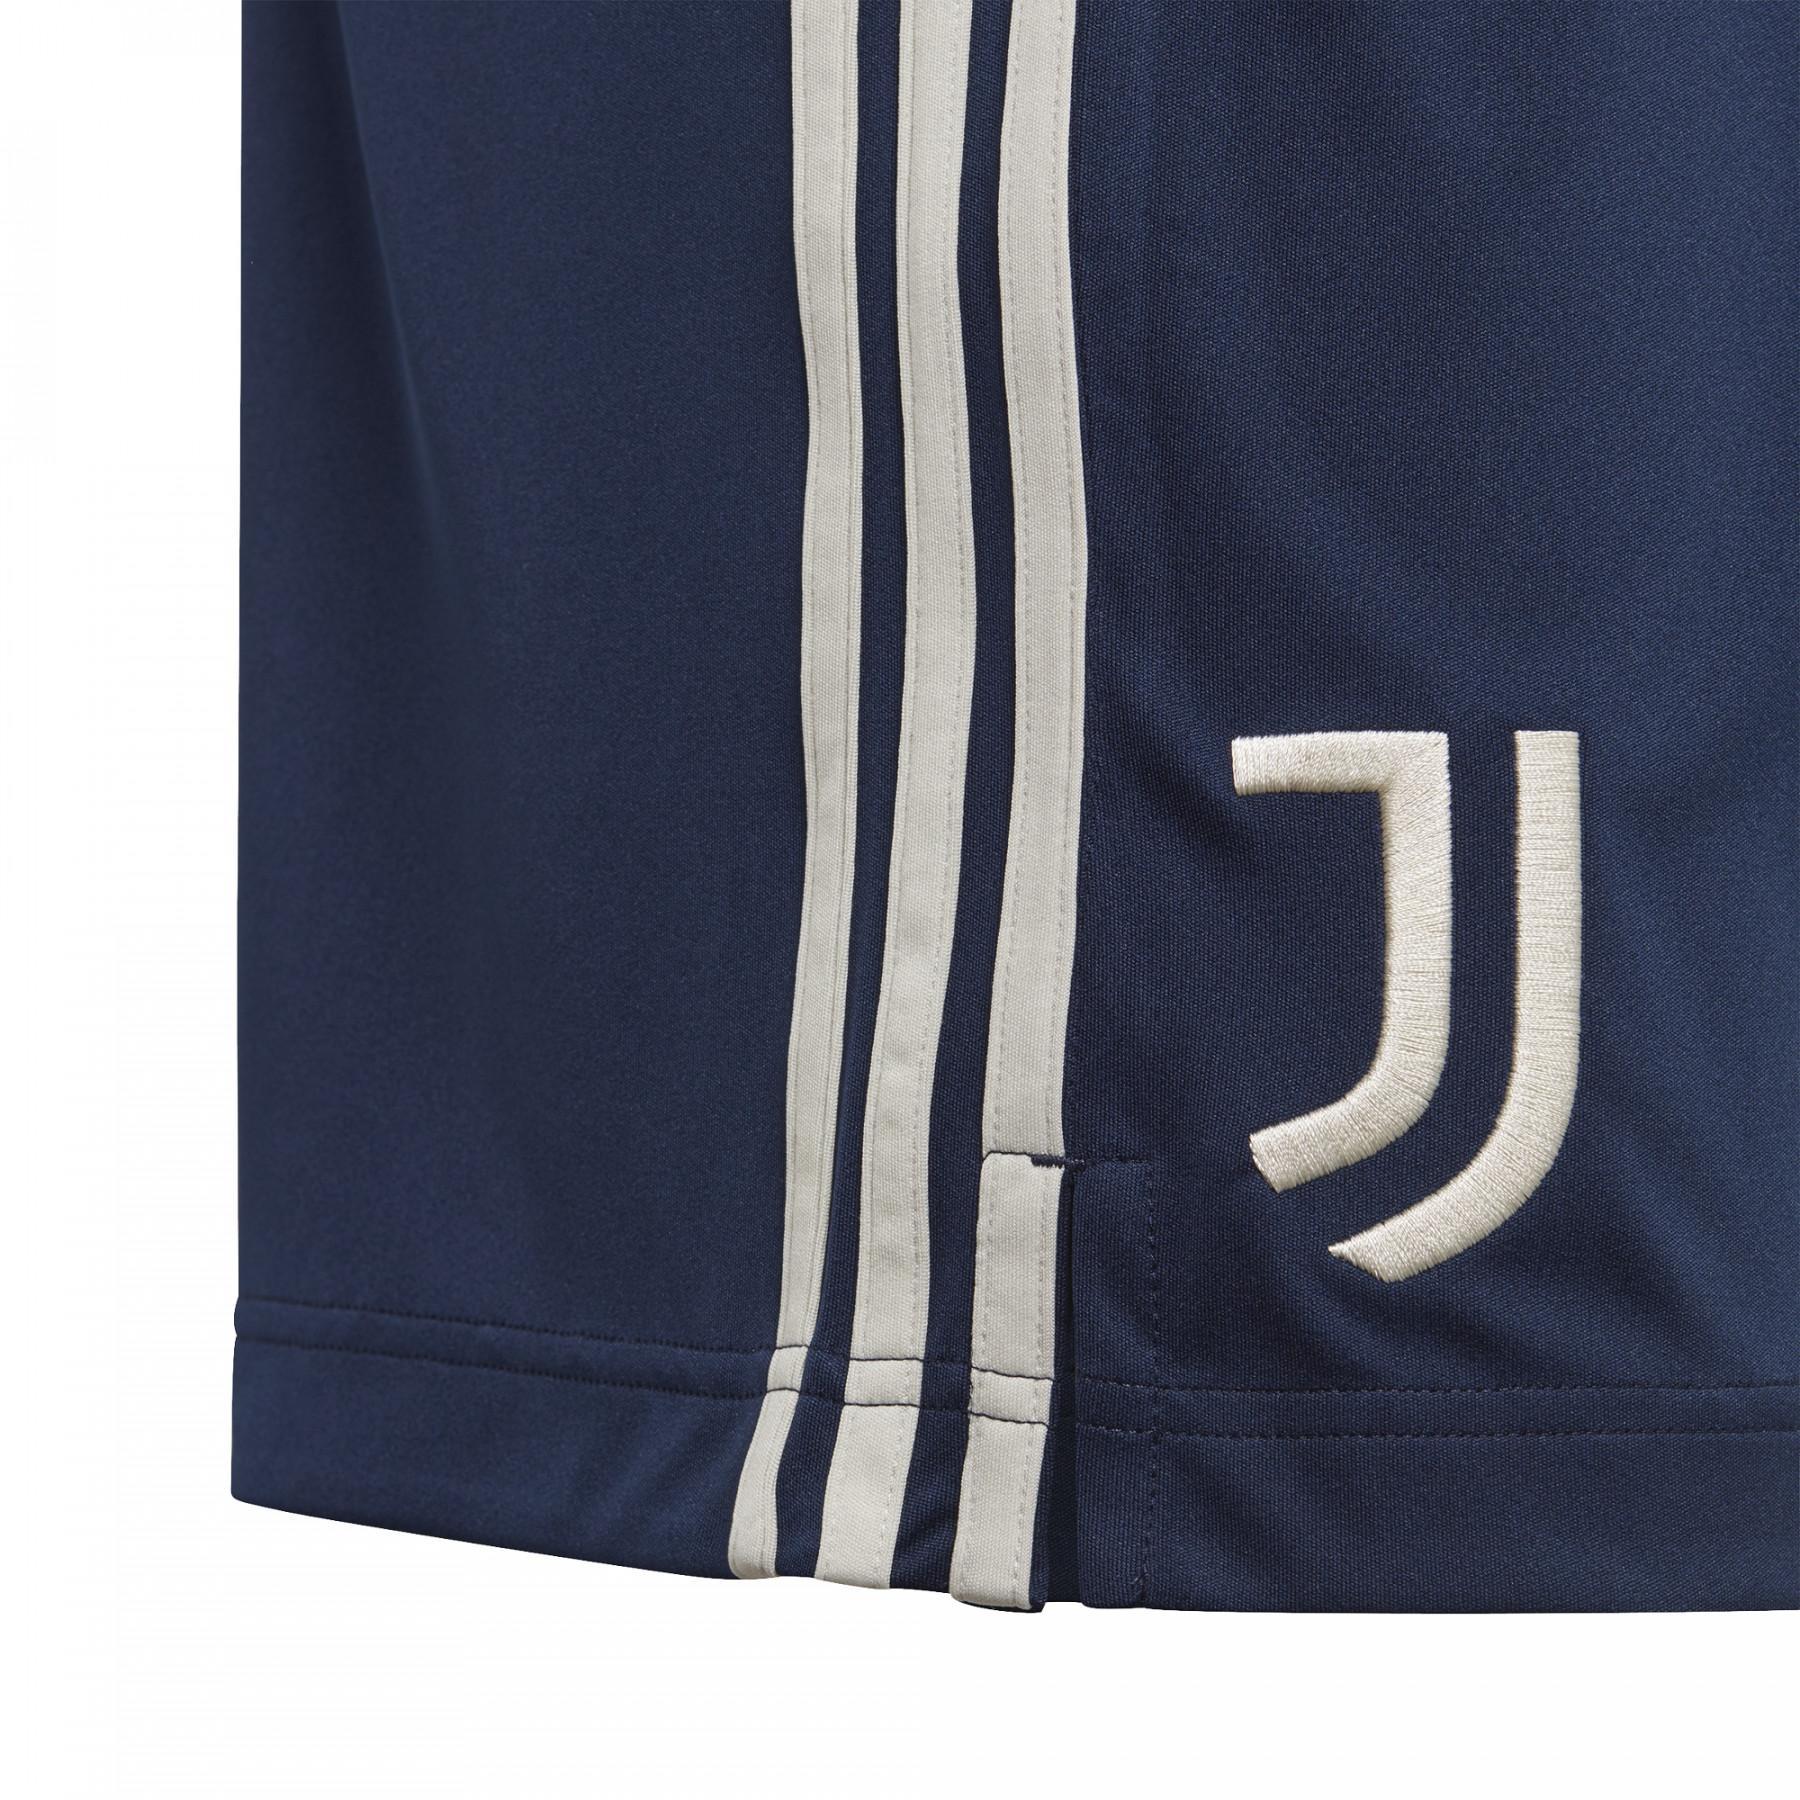 Outdoor shorts Juventus 2020/21